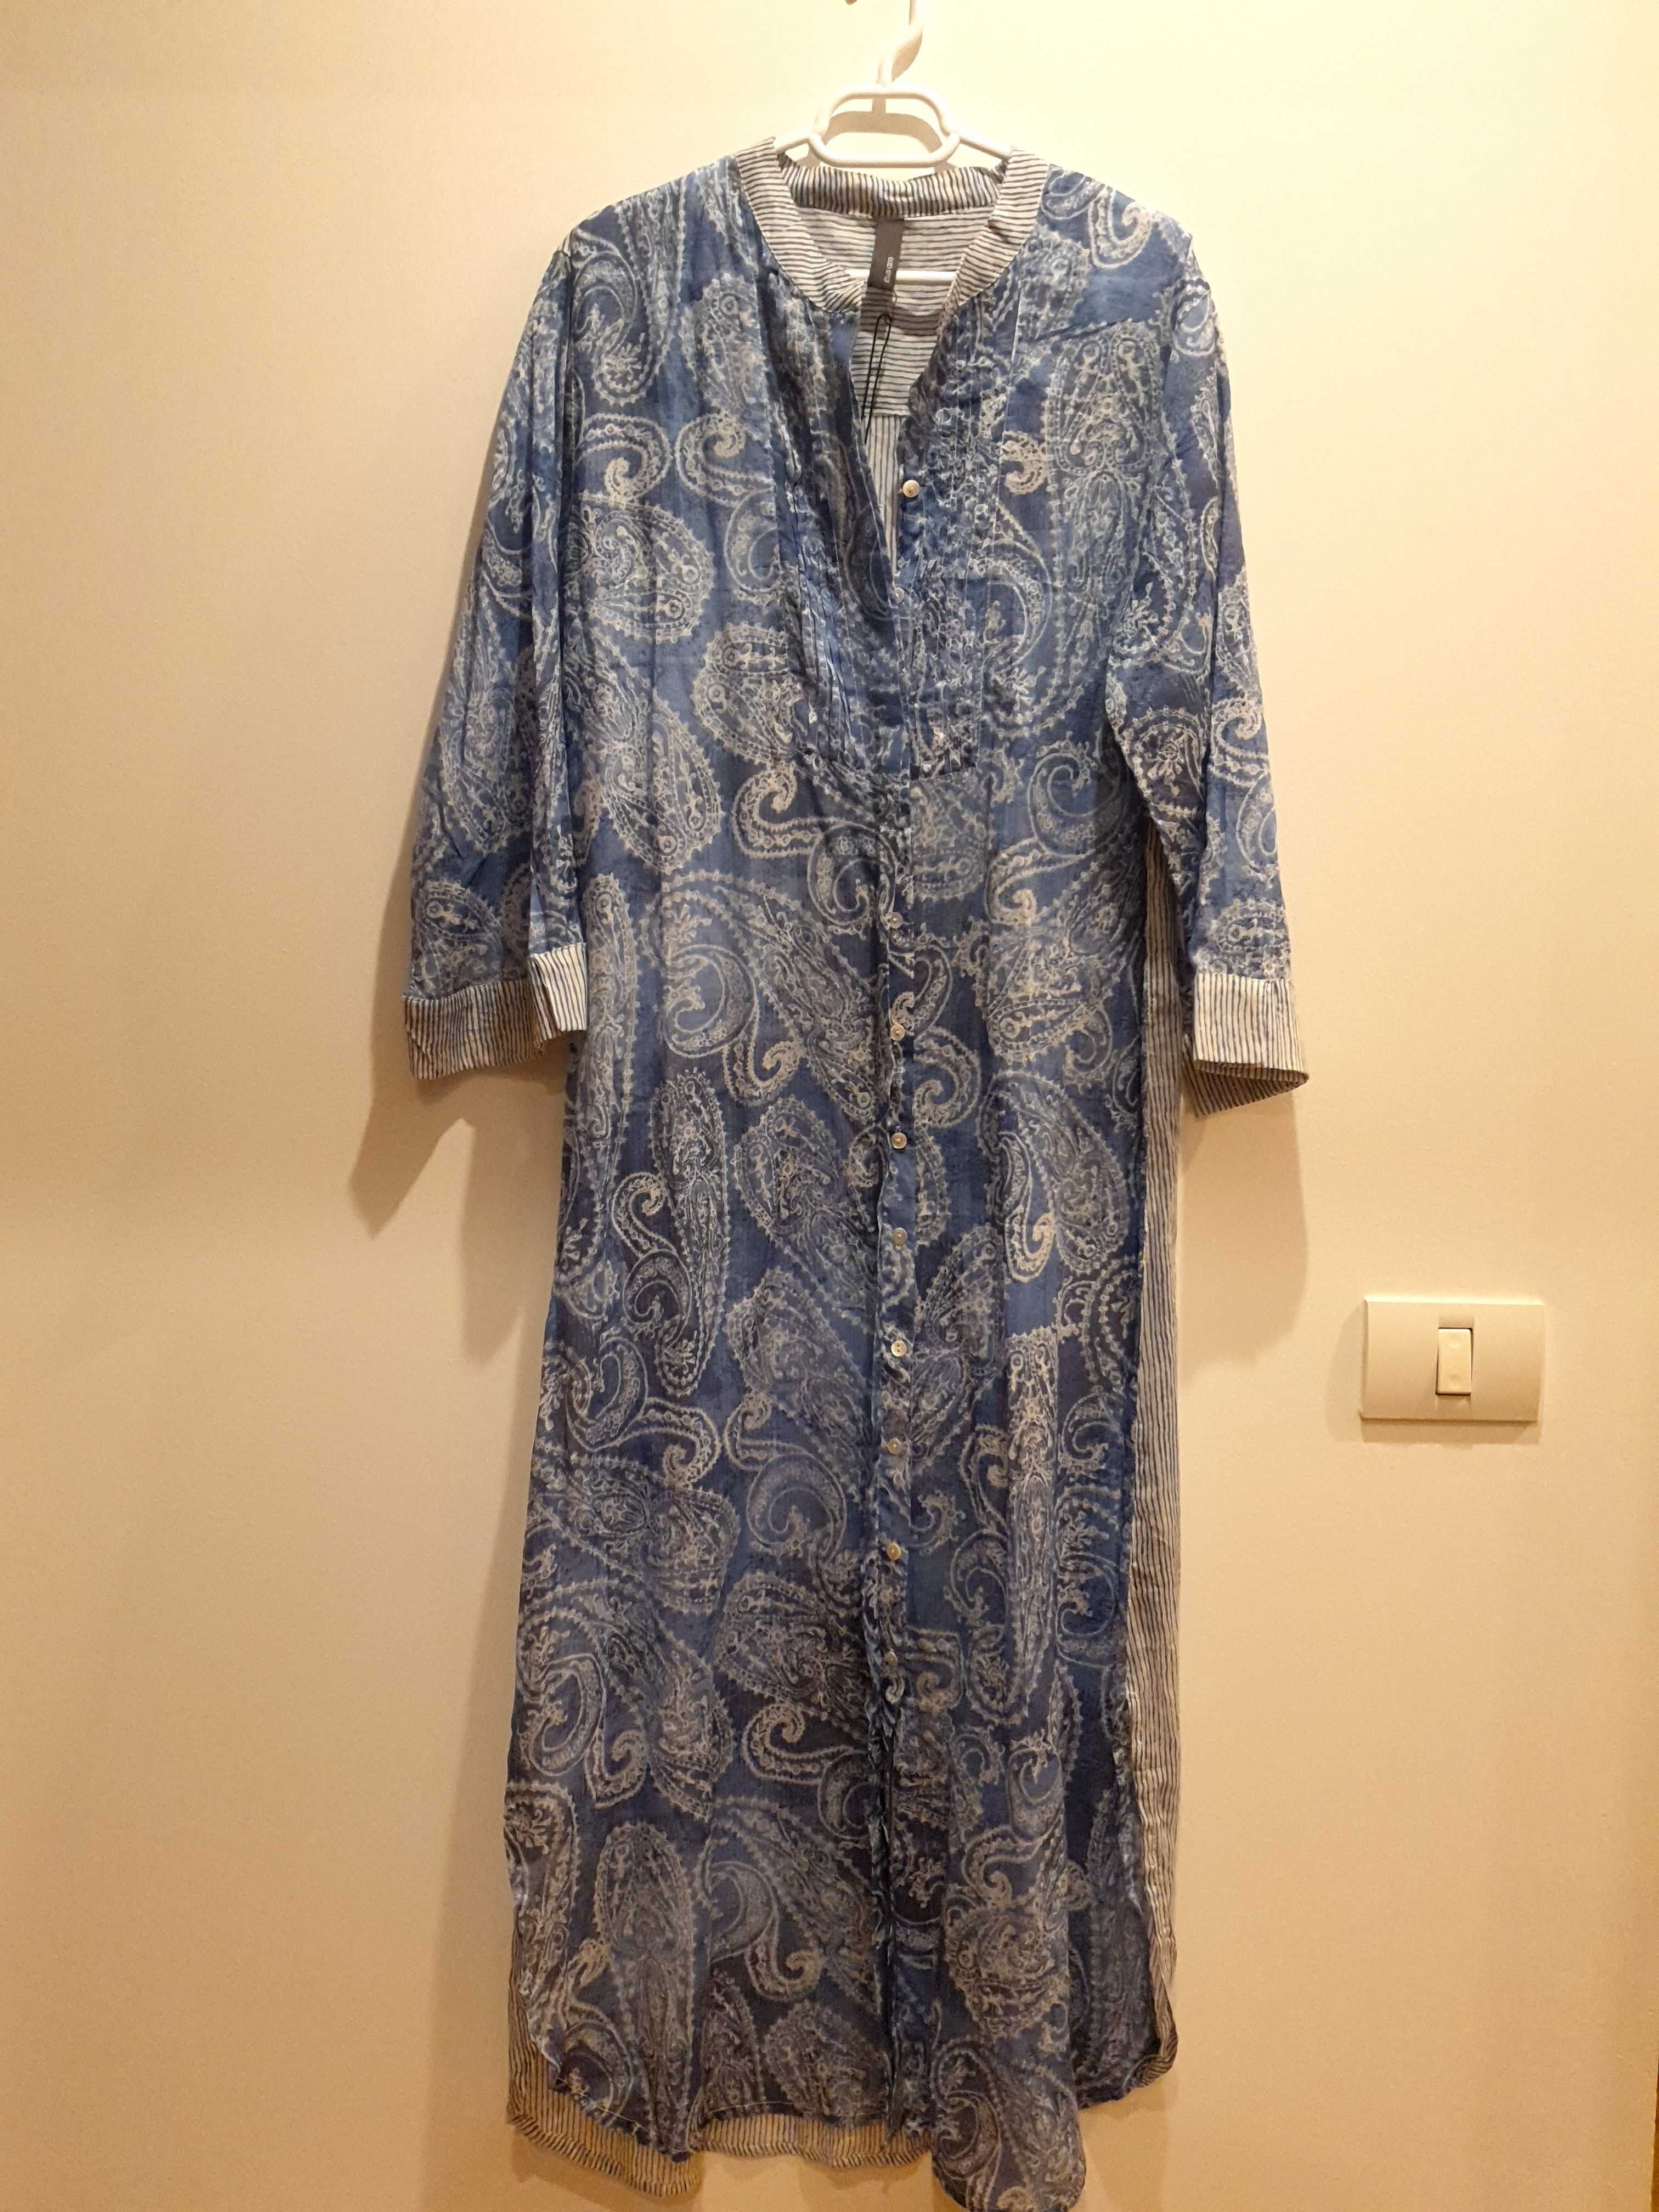 Vand rochie design grecesc